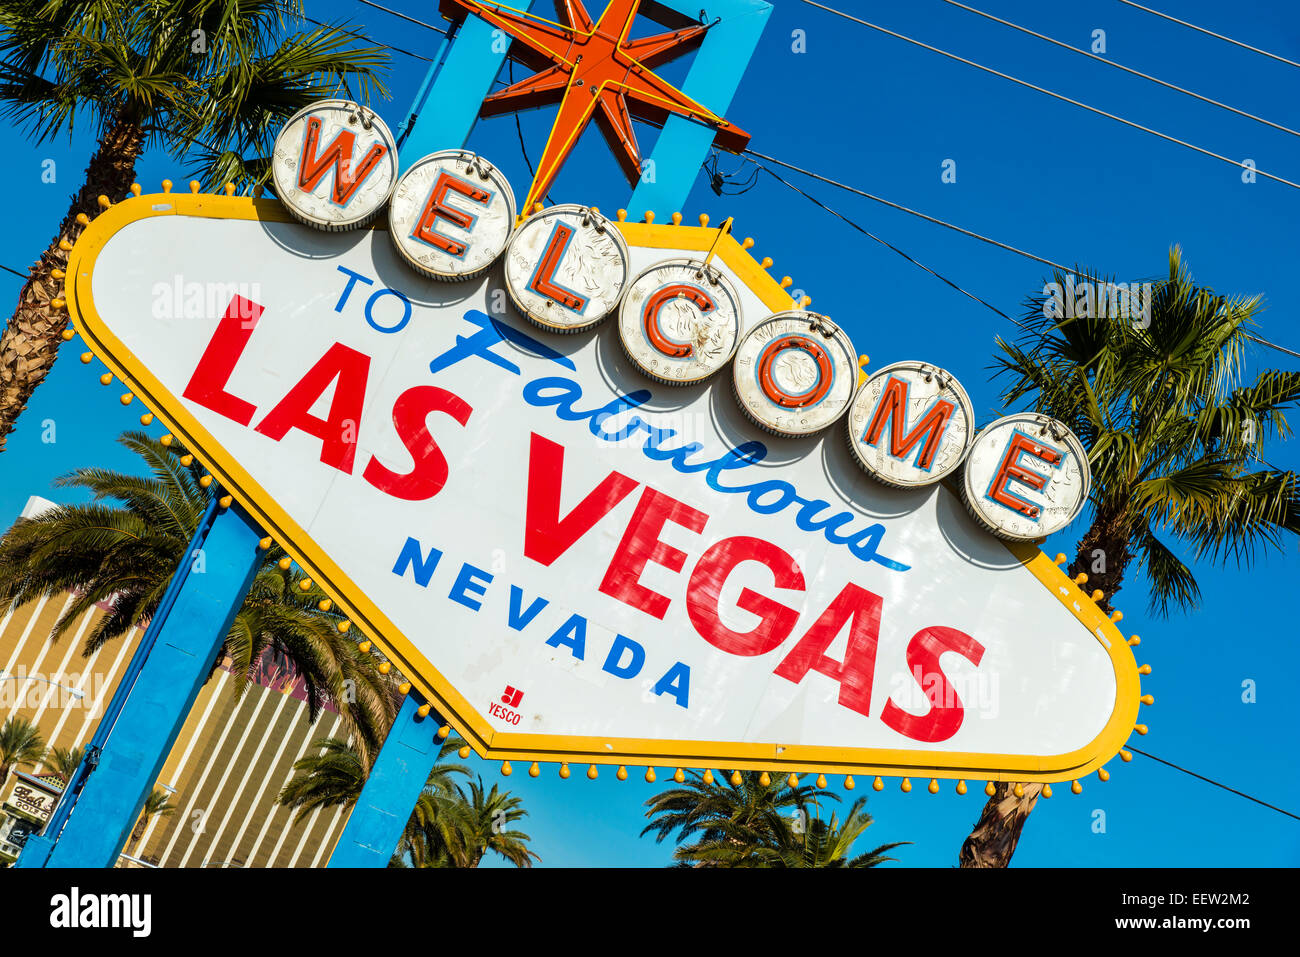 Benvenuto nella favolosa Las Vegas segno, Las Vegas, Nevada, STATI UNITI D'AMERICA Foto Stock